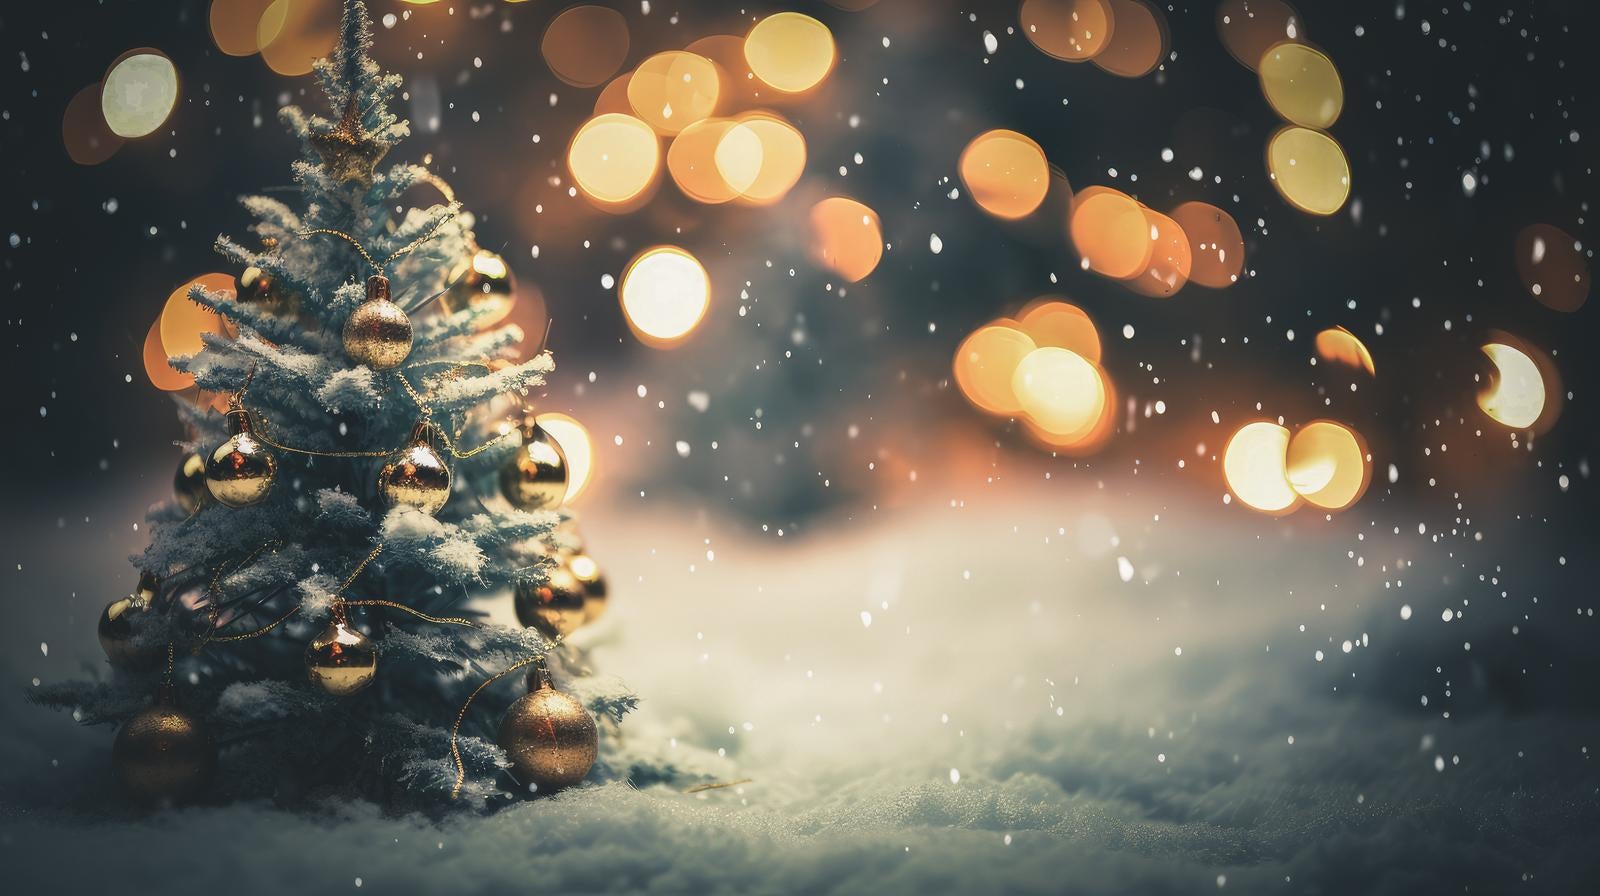 「ホワイトクリスマスとライトアップの街」の写真